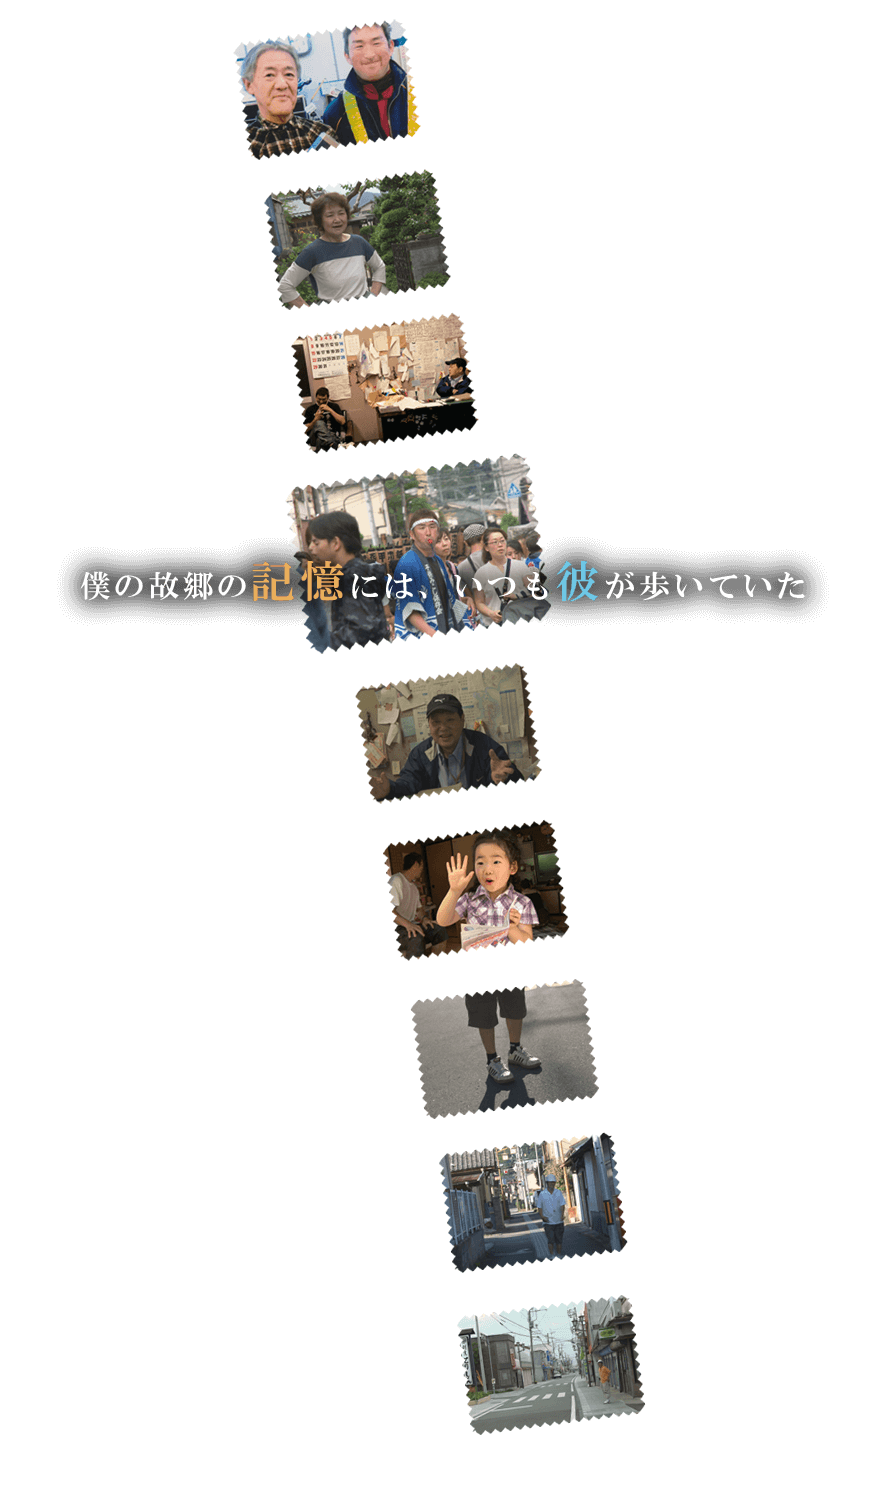 ドキュメンタリー映画『ひいくんのあるく町』｜青柳拓初監督作品｜2017年4月 K'S CINEMAにて劇場公開